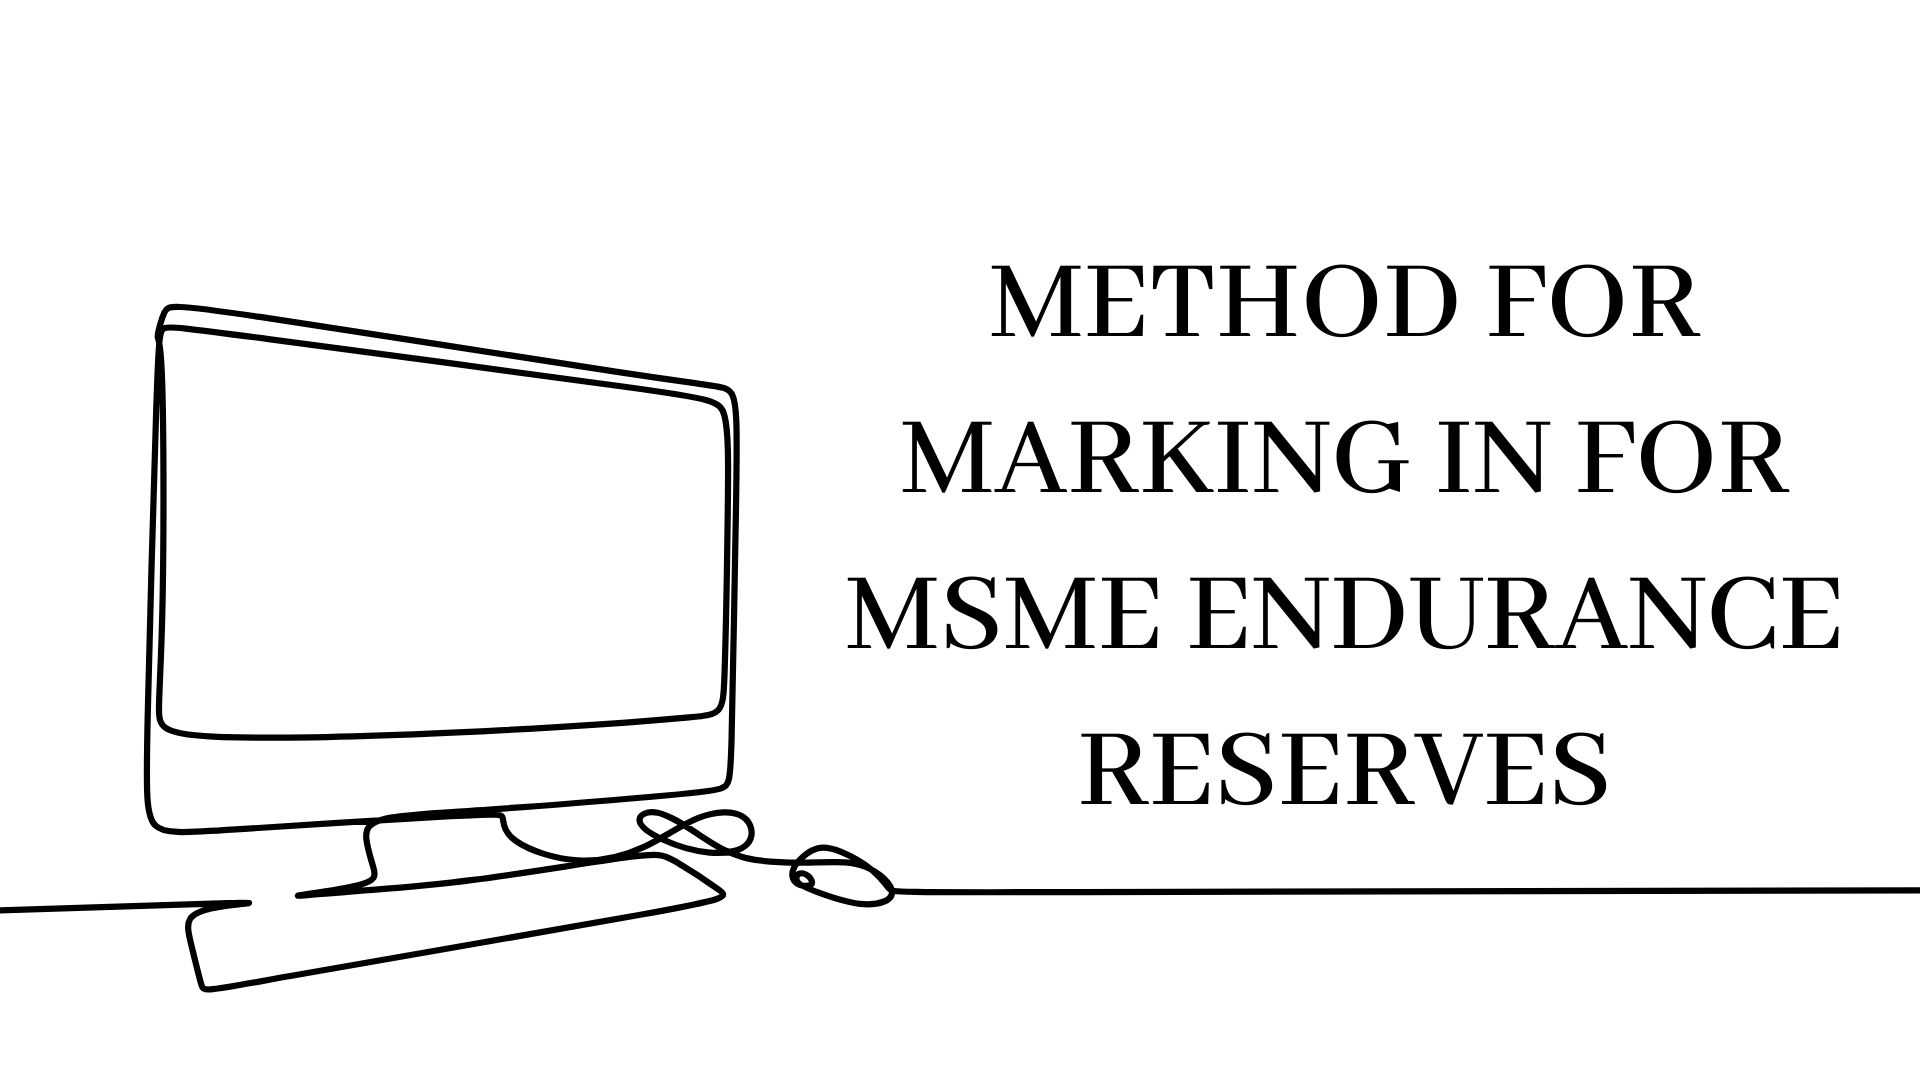 Method for marking in for MSME endurance reserves